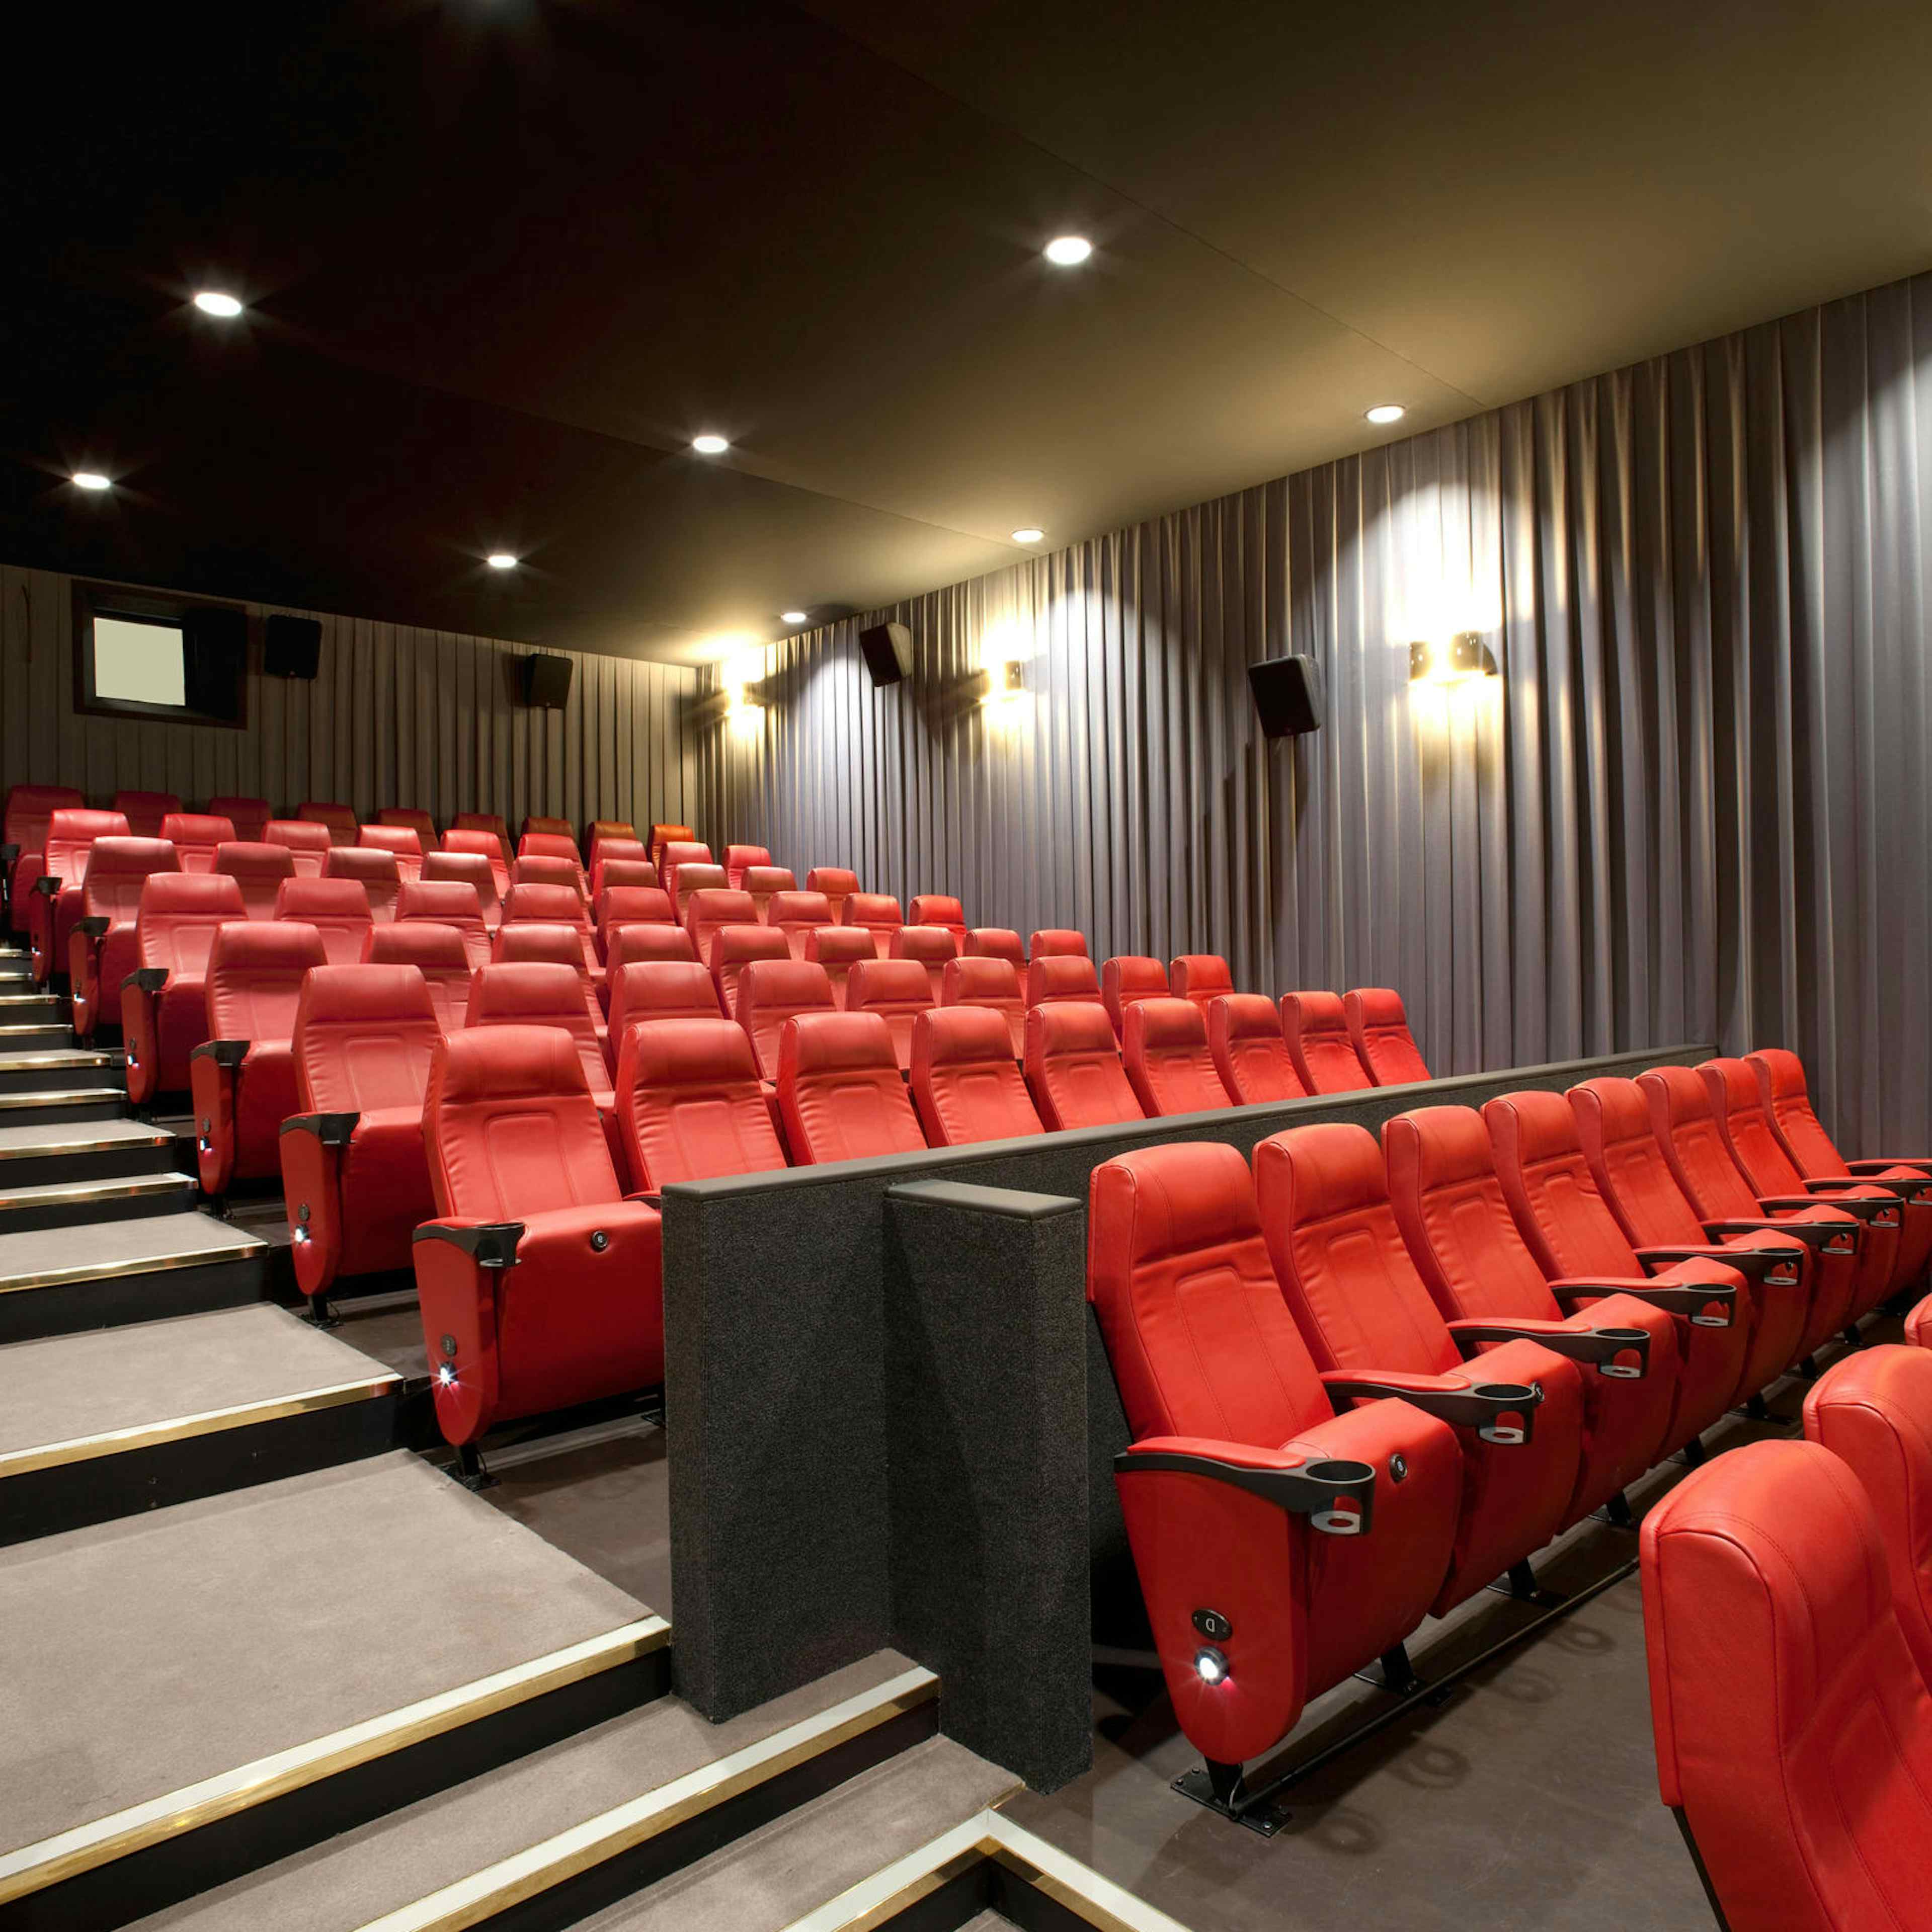 Barbican Centre - Cinemas 2 & 3 image 2